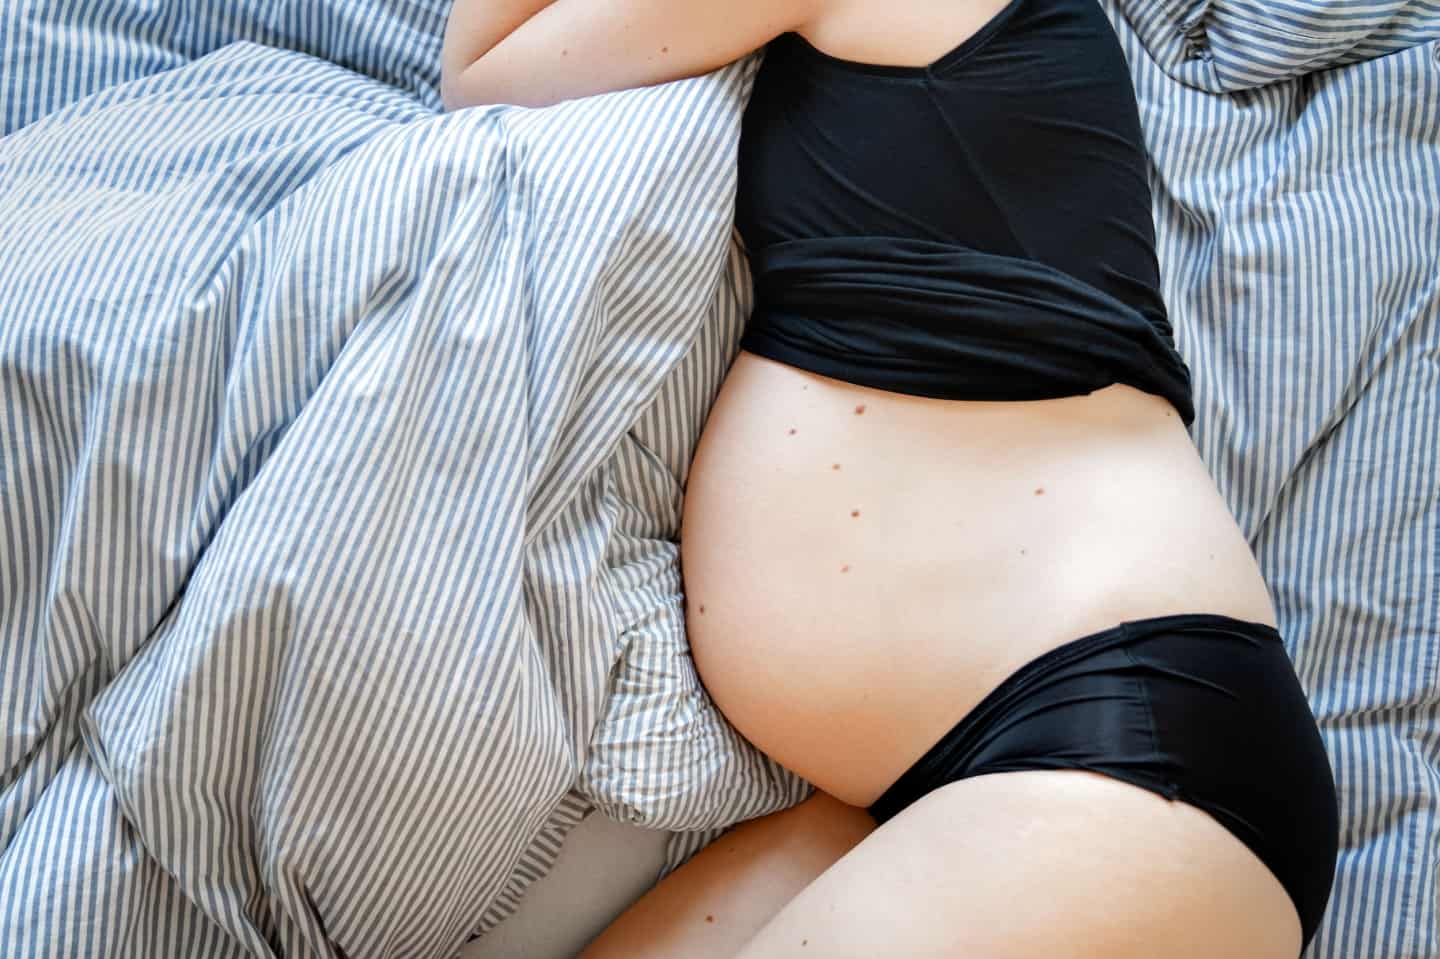 Sundhedsstyrelsen indkalder eksperter igen efter kritik PFAS-anbefalinger til gravide | Avisen Danmark